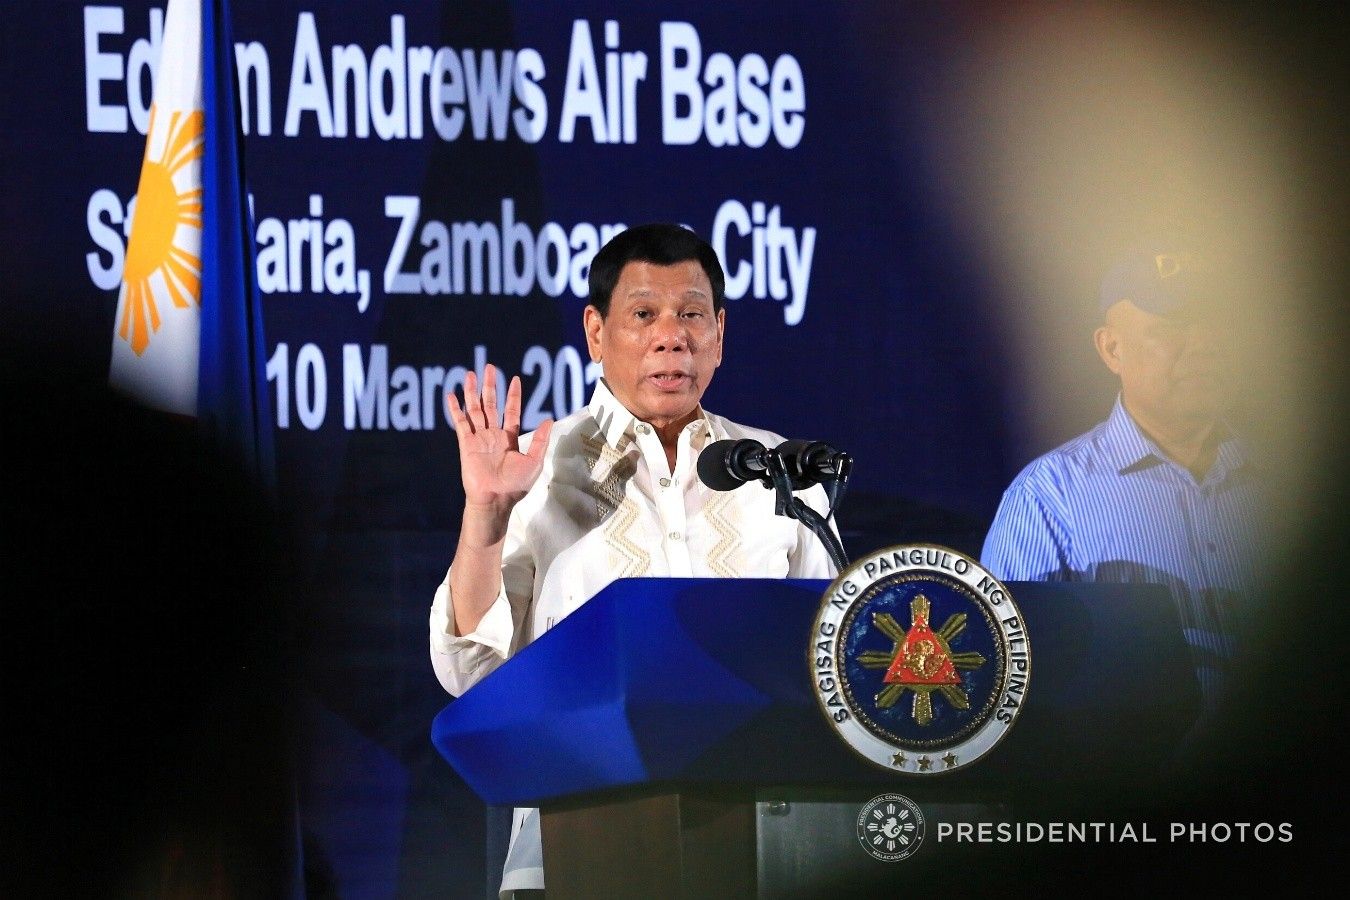 UN rights experts ipakain sa buwaya! - Duterte